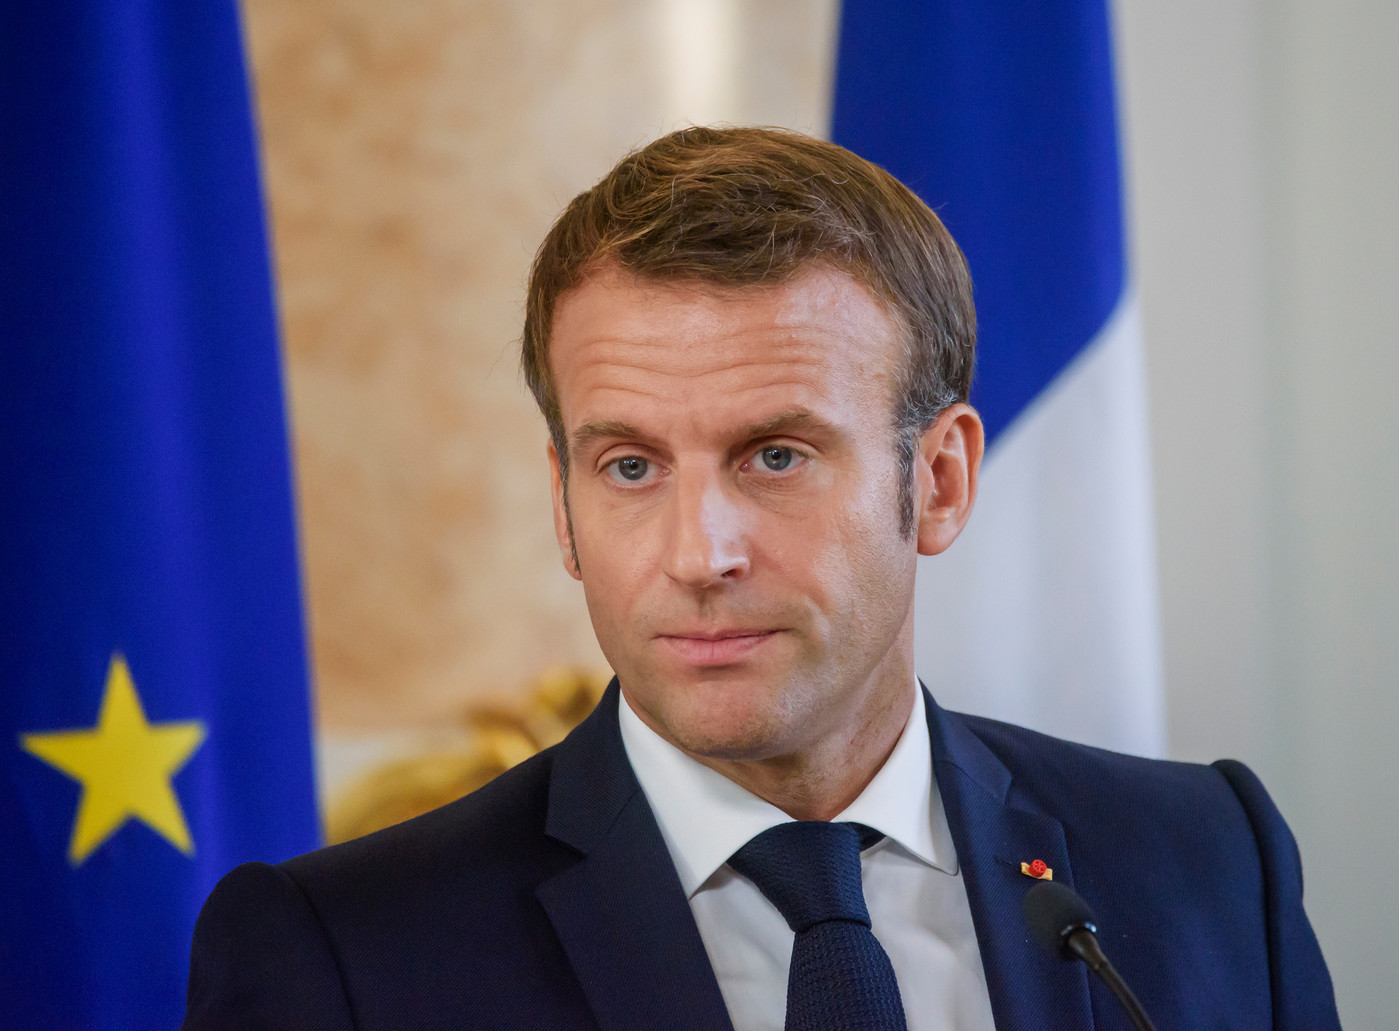 France : Emmanuel Macron invité de TF1 et France 2 mercredi soir - Tunisie Numérique